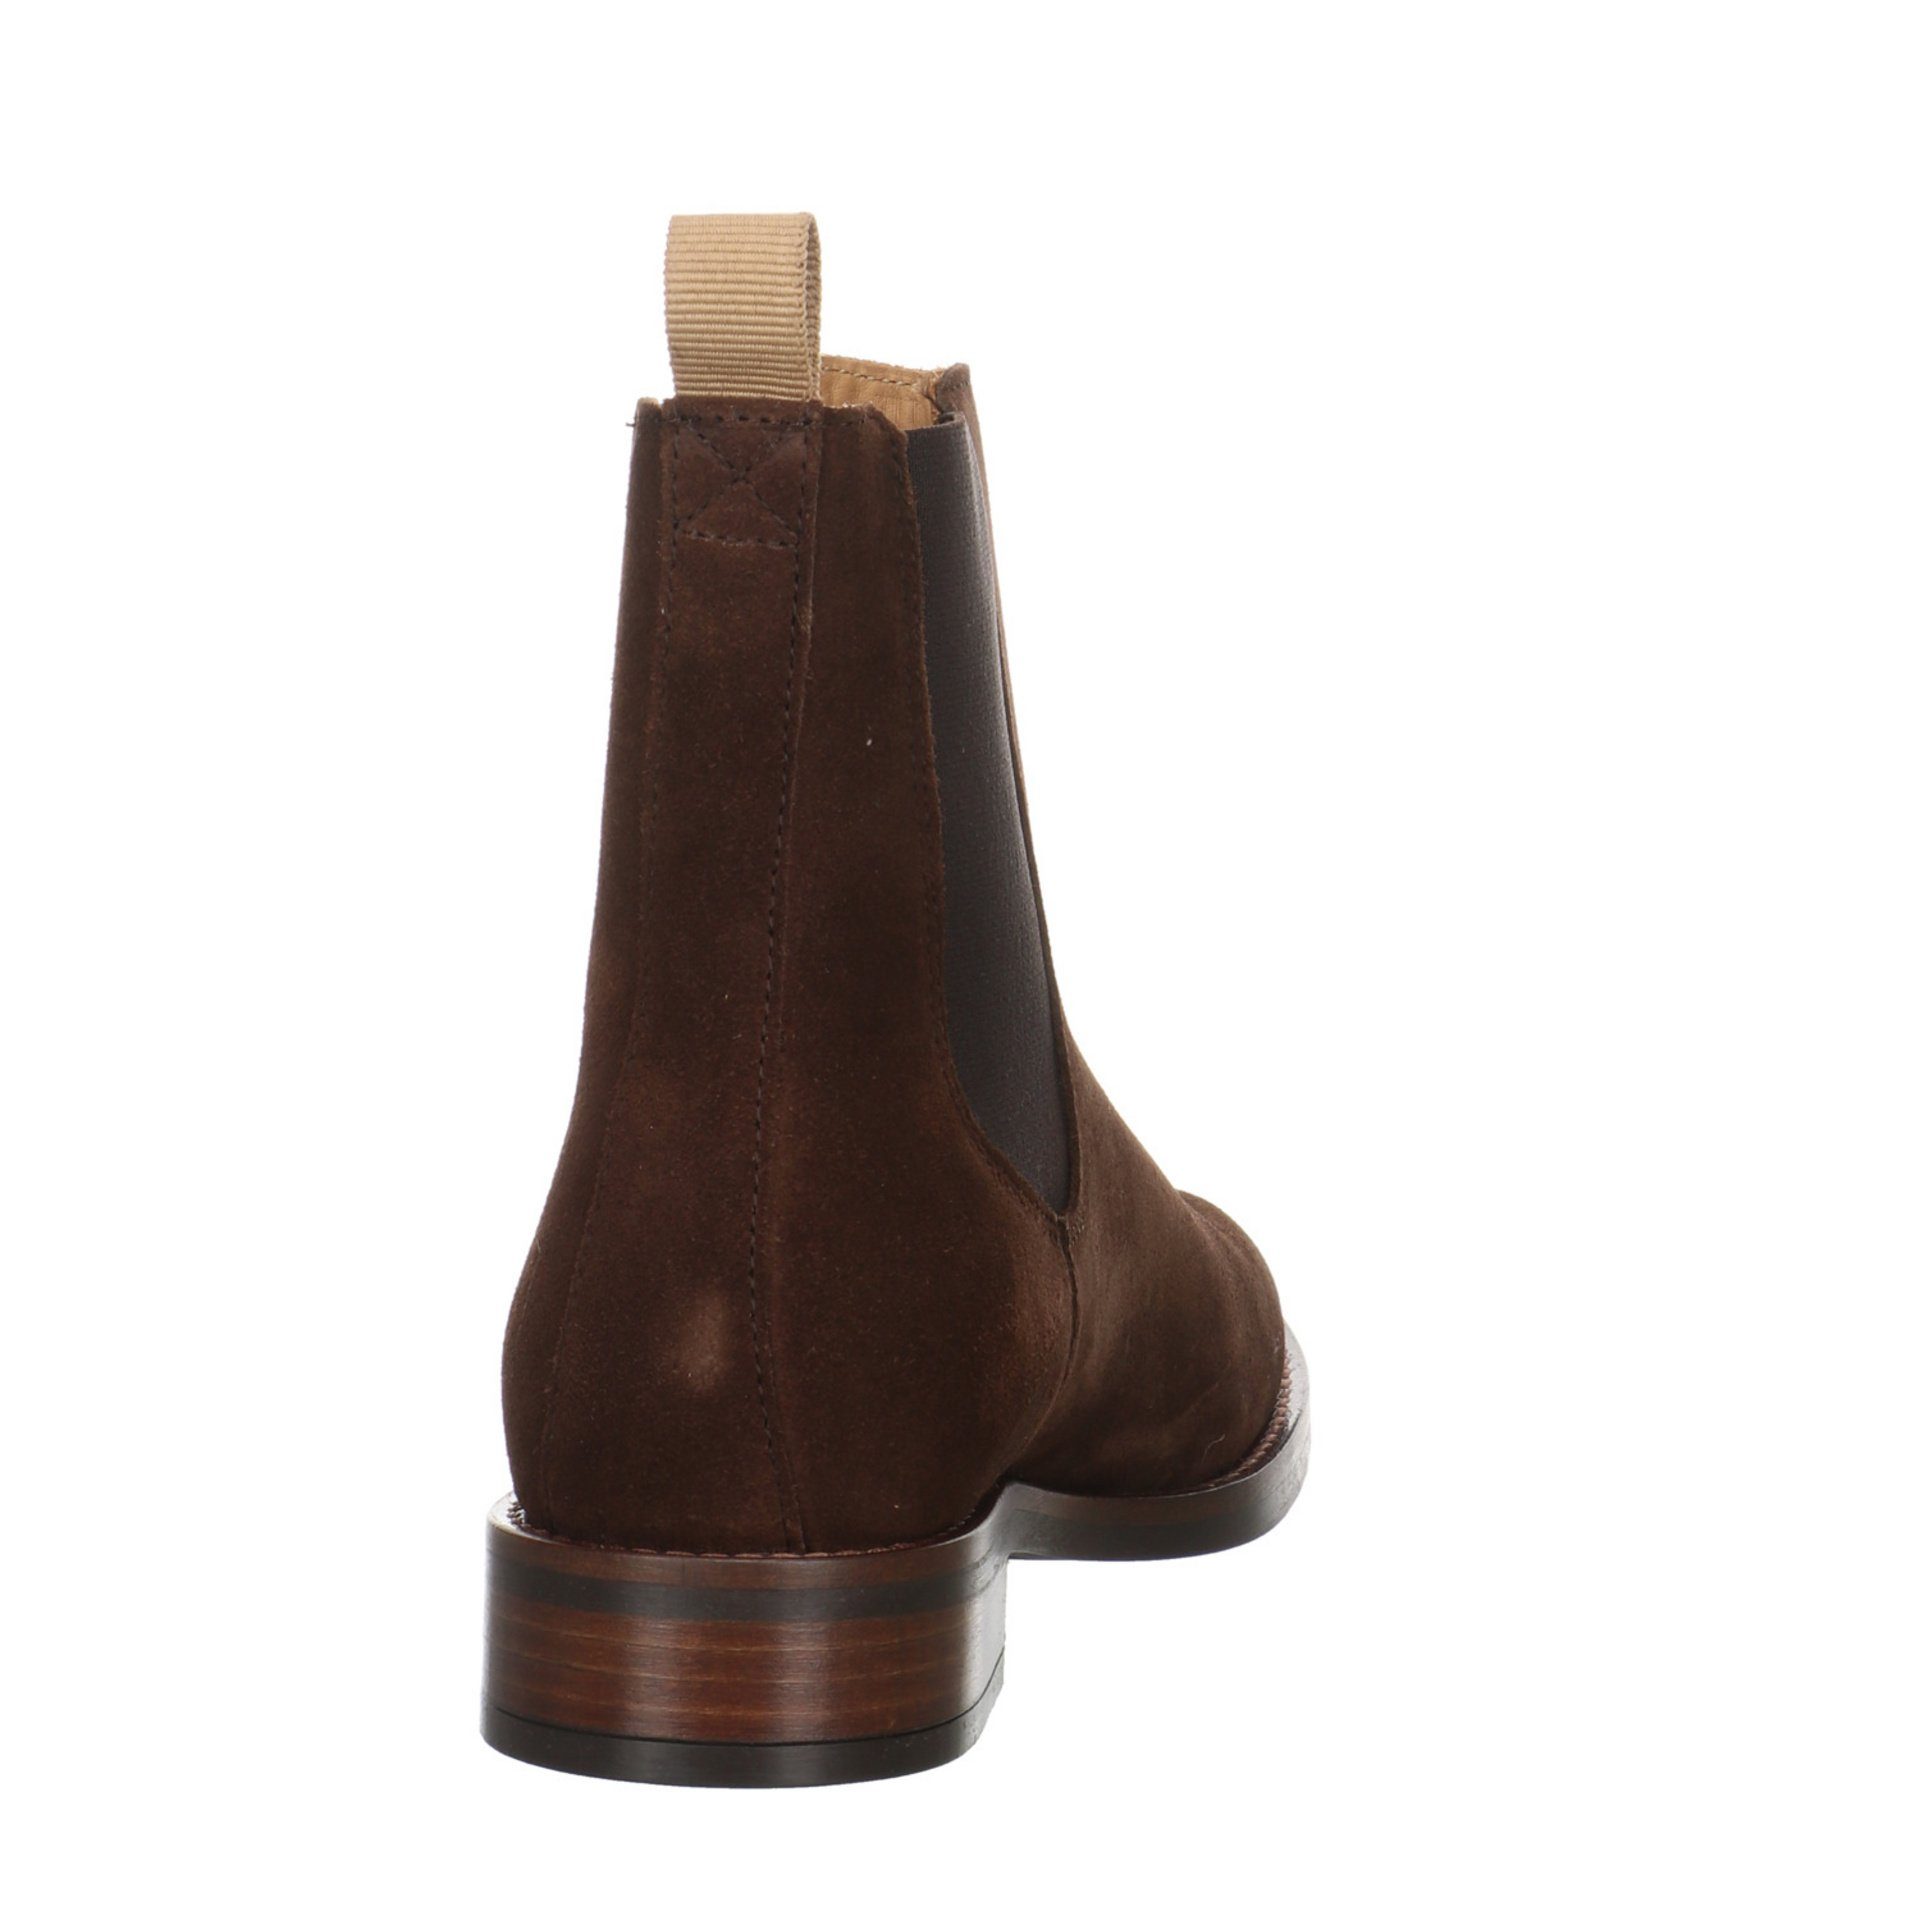 Gant Damen Stiefeletten Schuhe Leder-/Textilkombination Stiefelette Boots FAYY dark Chelsea brown